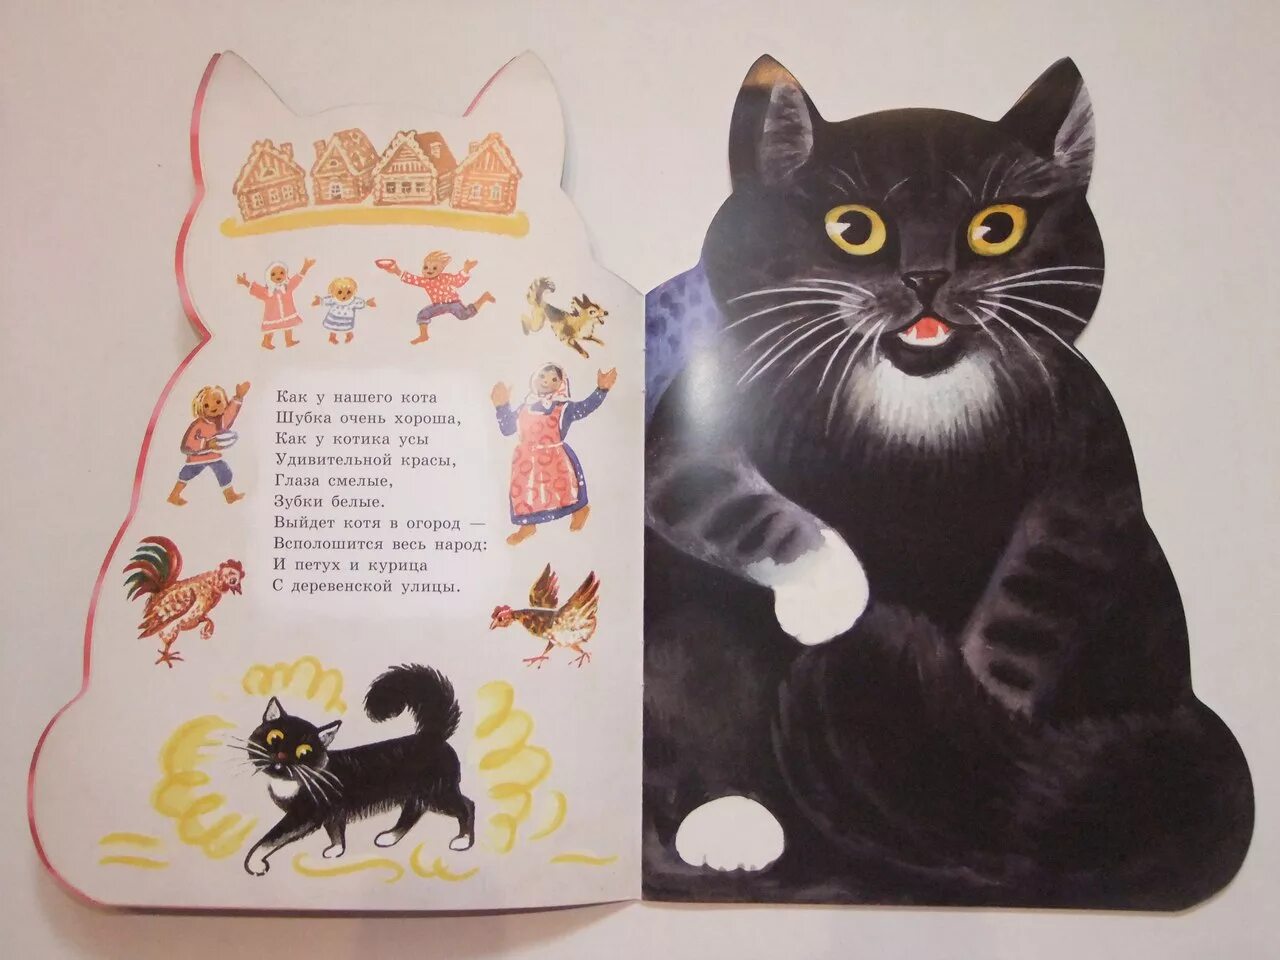 Произведения о котах. Книжки про котиков. Книги о котах и кошках для детей. Стих про кошку для детей. Мирная считалка